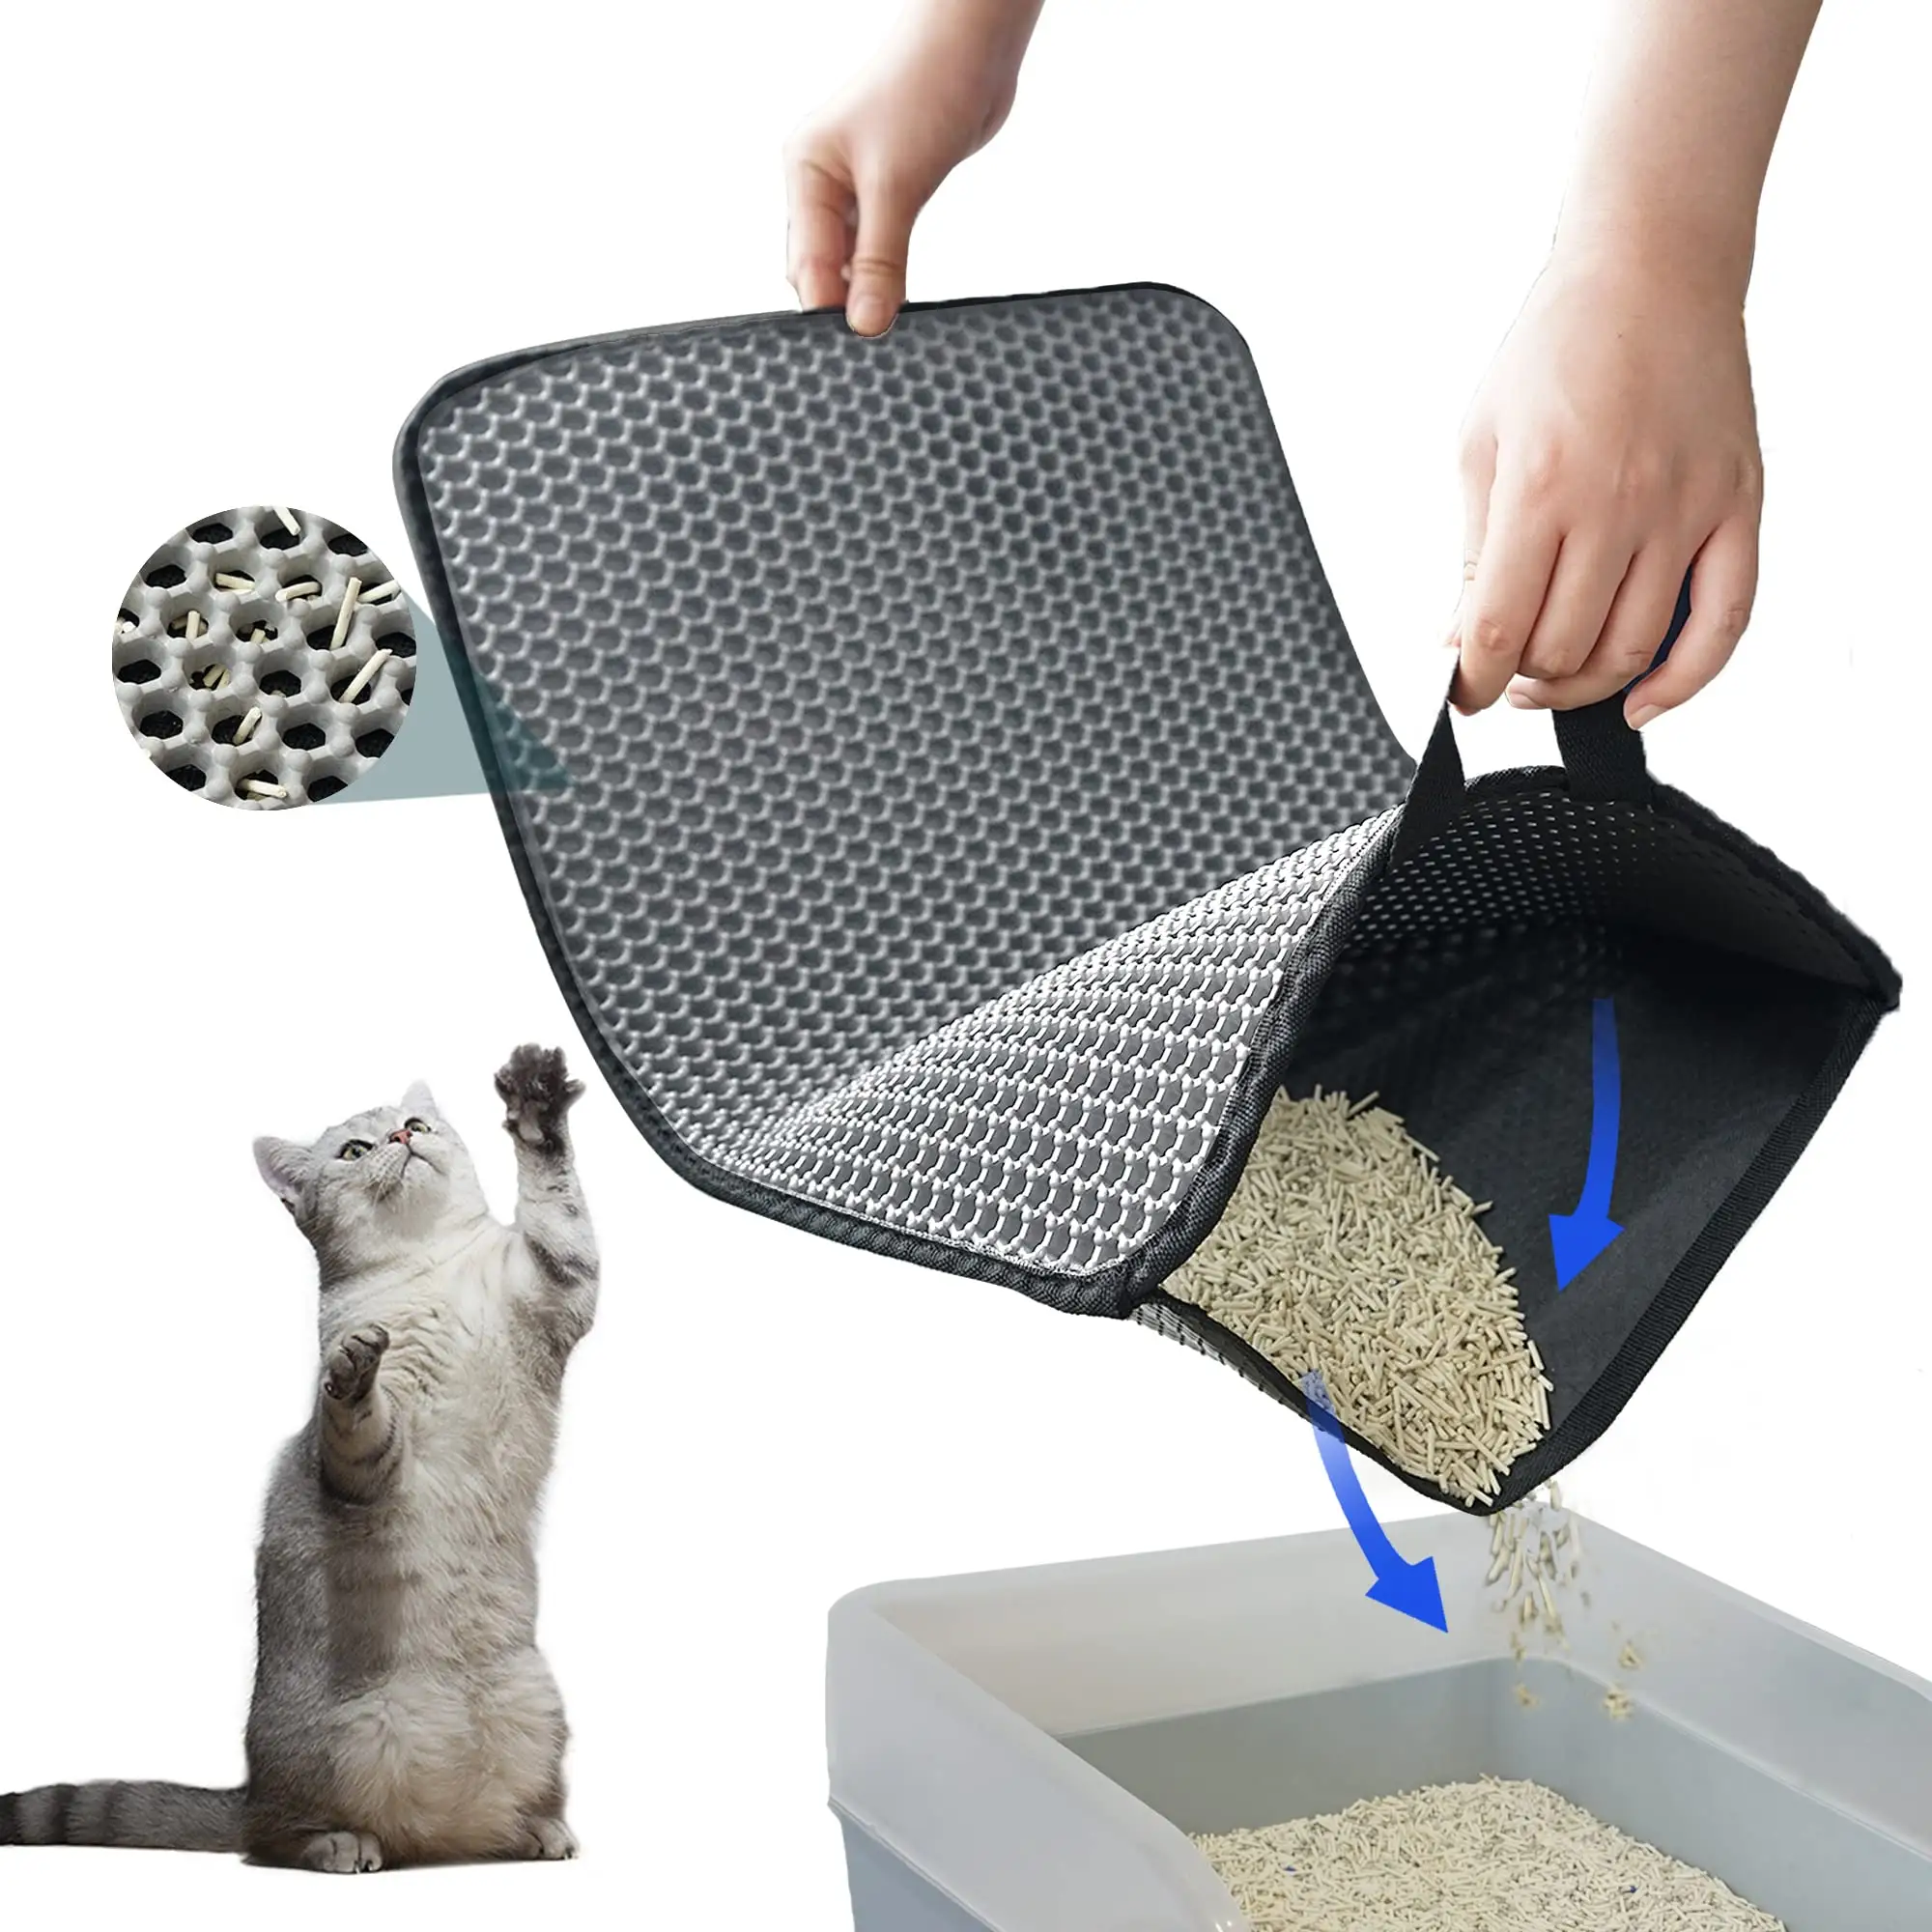 お手入れが簡単洗える2層防水尿プルーフデザイン水素材散布制御無駄の少ない猫用トイレマット